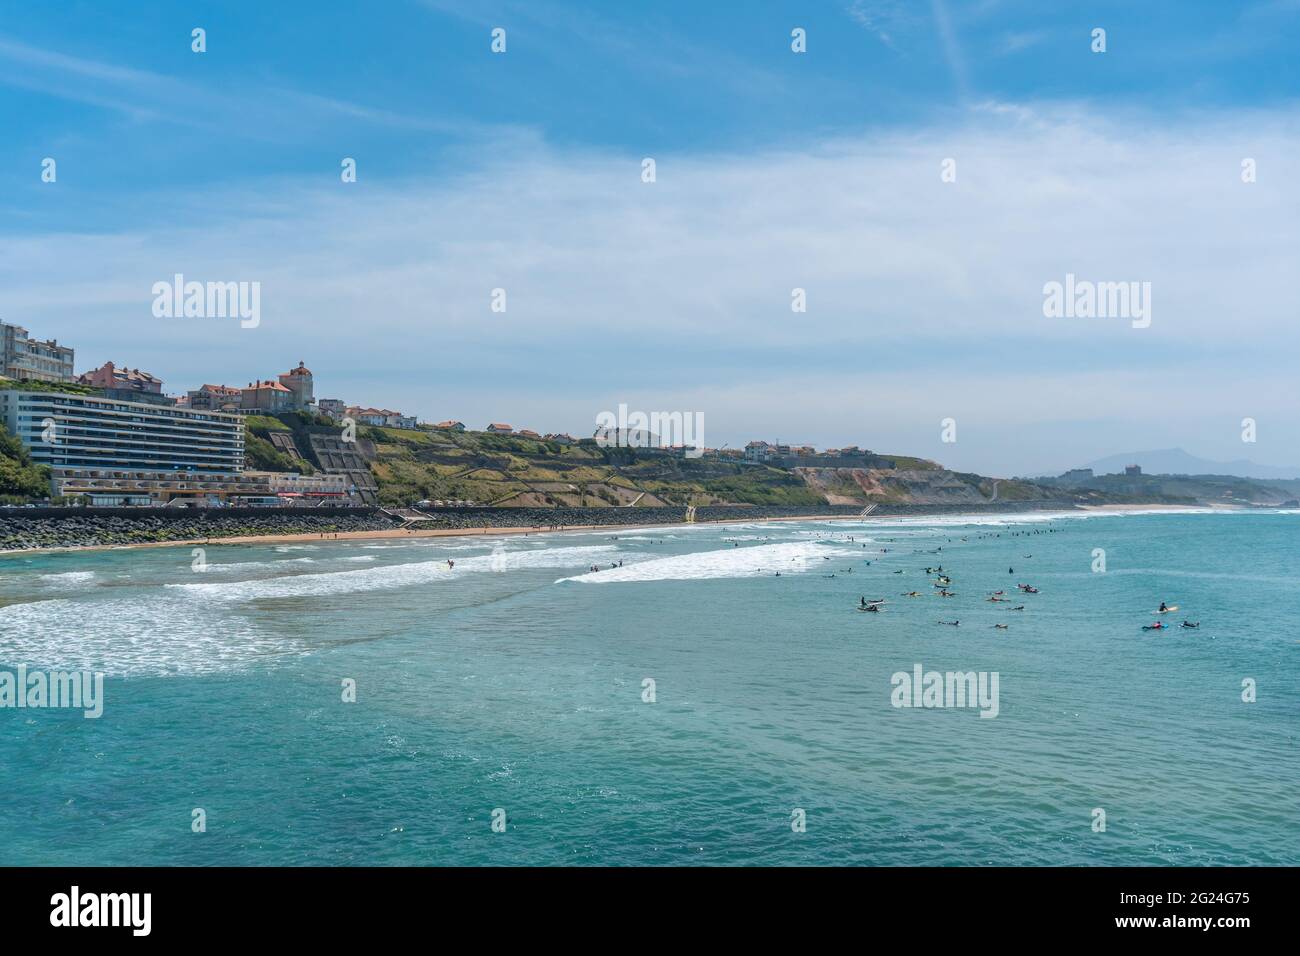 Belle photo de la plage de la Côte des Basques dans la commune de Biarritz, France Banque D'Images